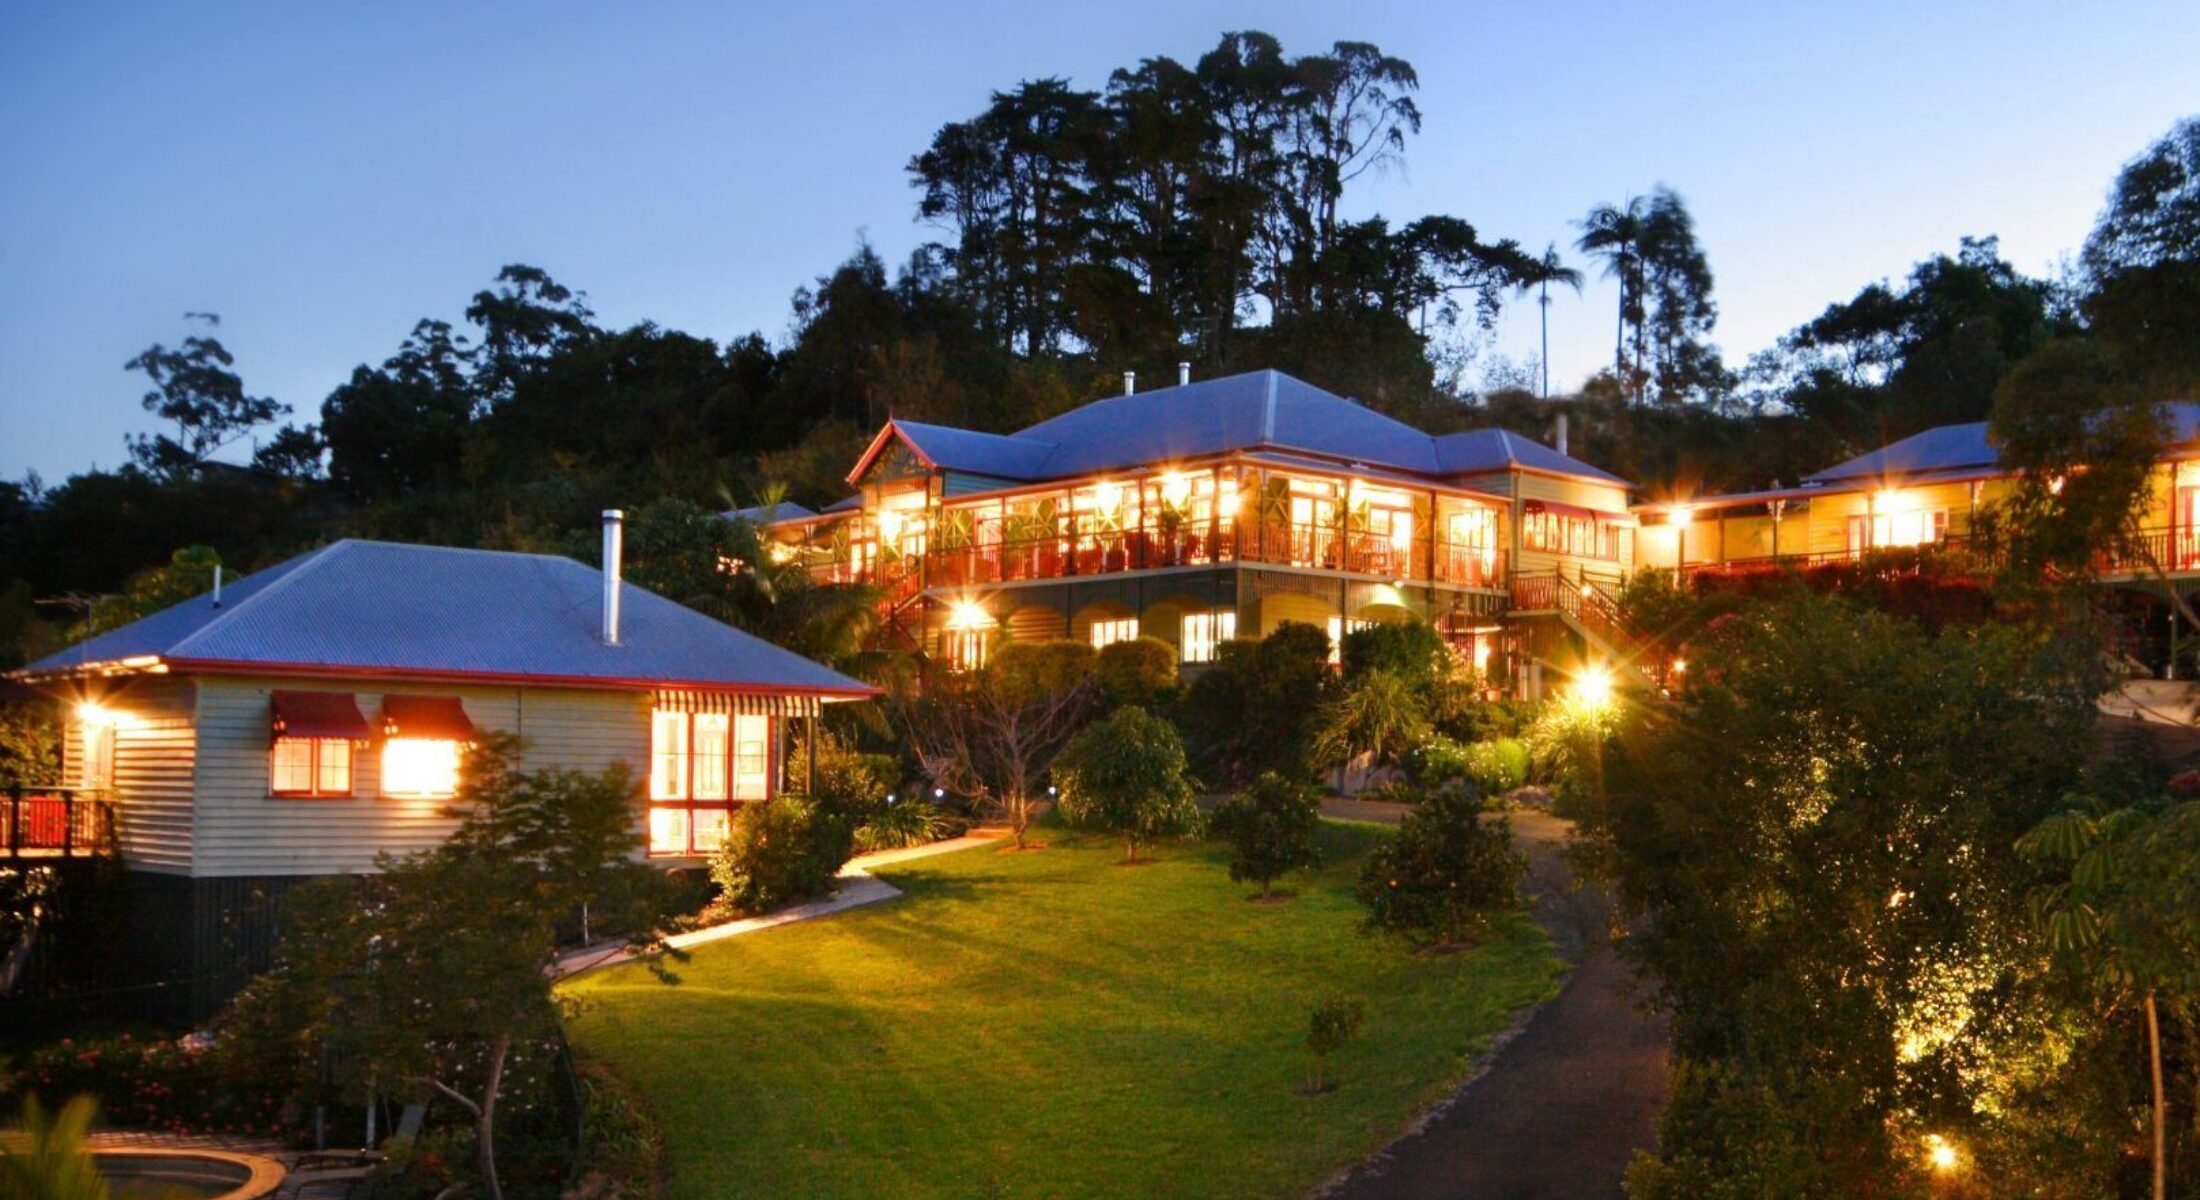 Maiala Park Lodge Moreton Bay Region hinterland stays near Brisbane